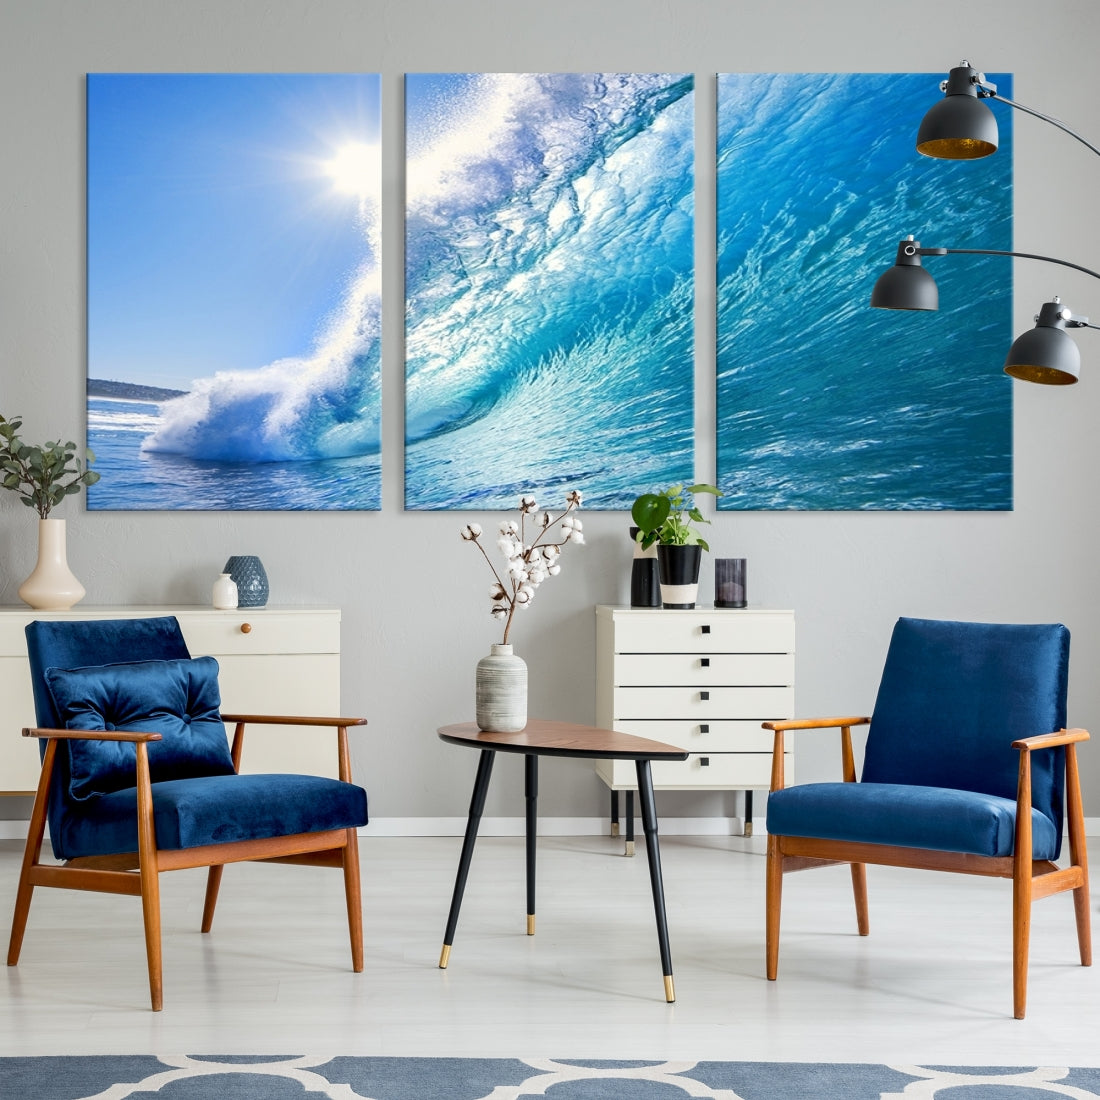 Extra Large Wall Art Canvas Amazing Shiny Big Wave Inside